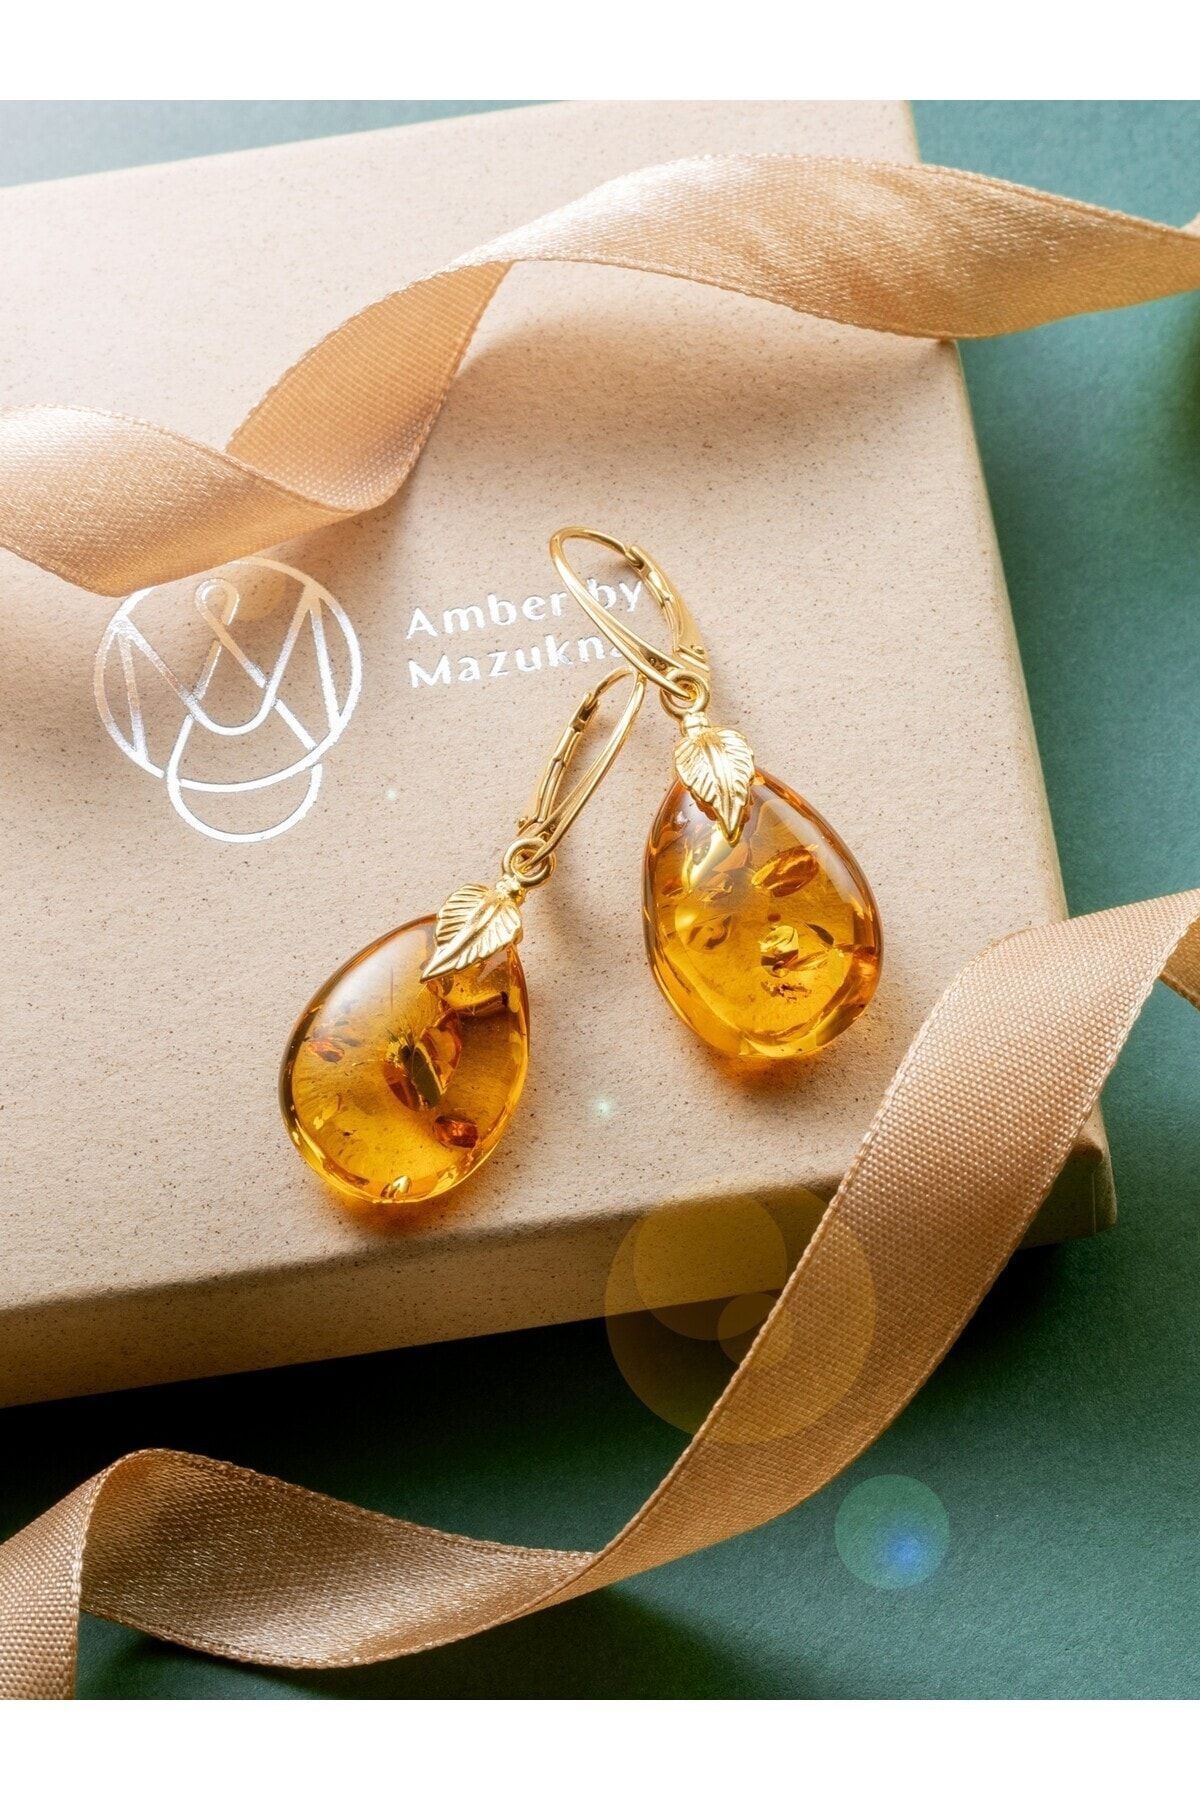 Amber by Mazukna Sertifikalı Baltık Damla Kehribar Küpe Sarı Renk Damla Kesim Ag 925 Gümüş Altın Kaplama